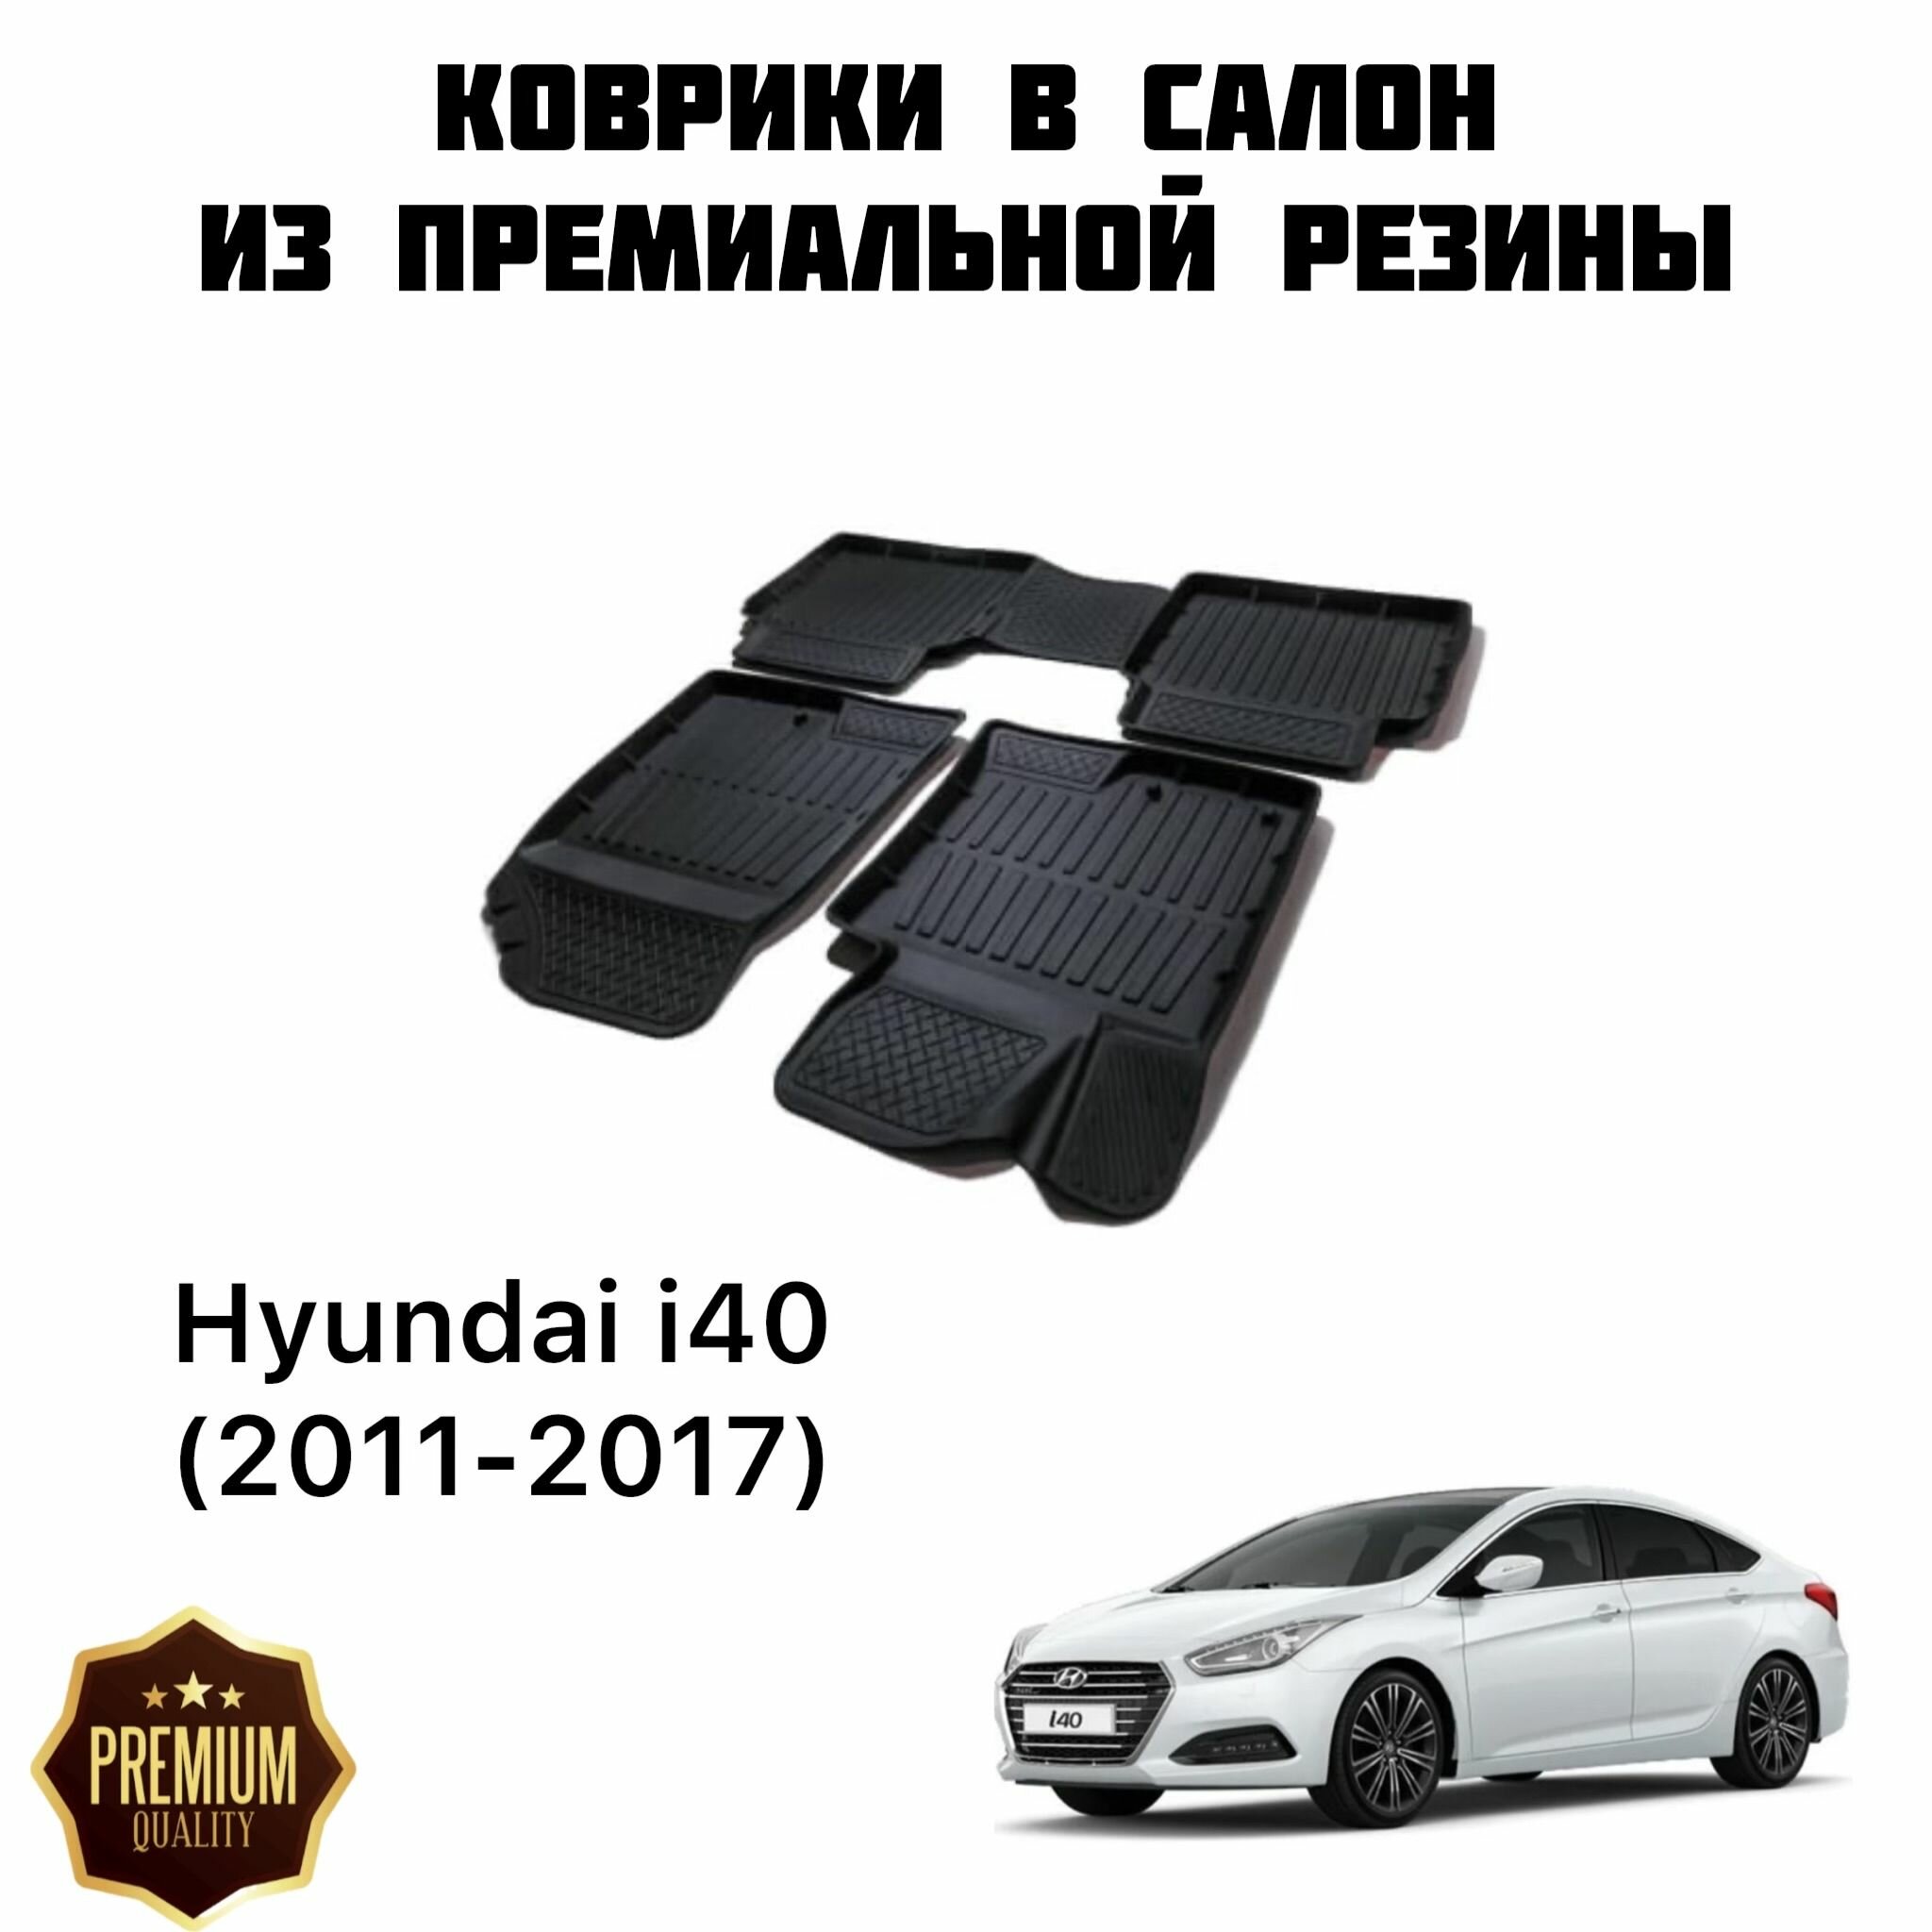 Резиновые коврики 3D PREMIUM для Hyundai i40 (2011-2017) / Коврики Хендай ай40